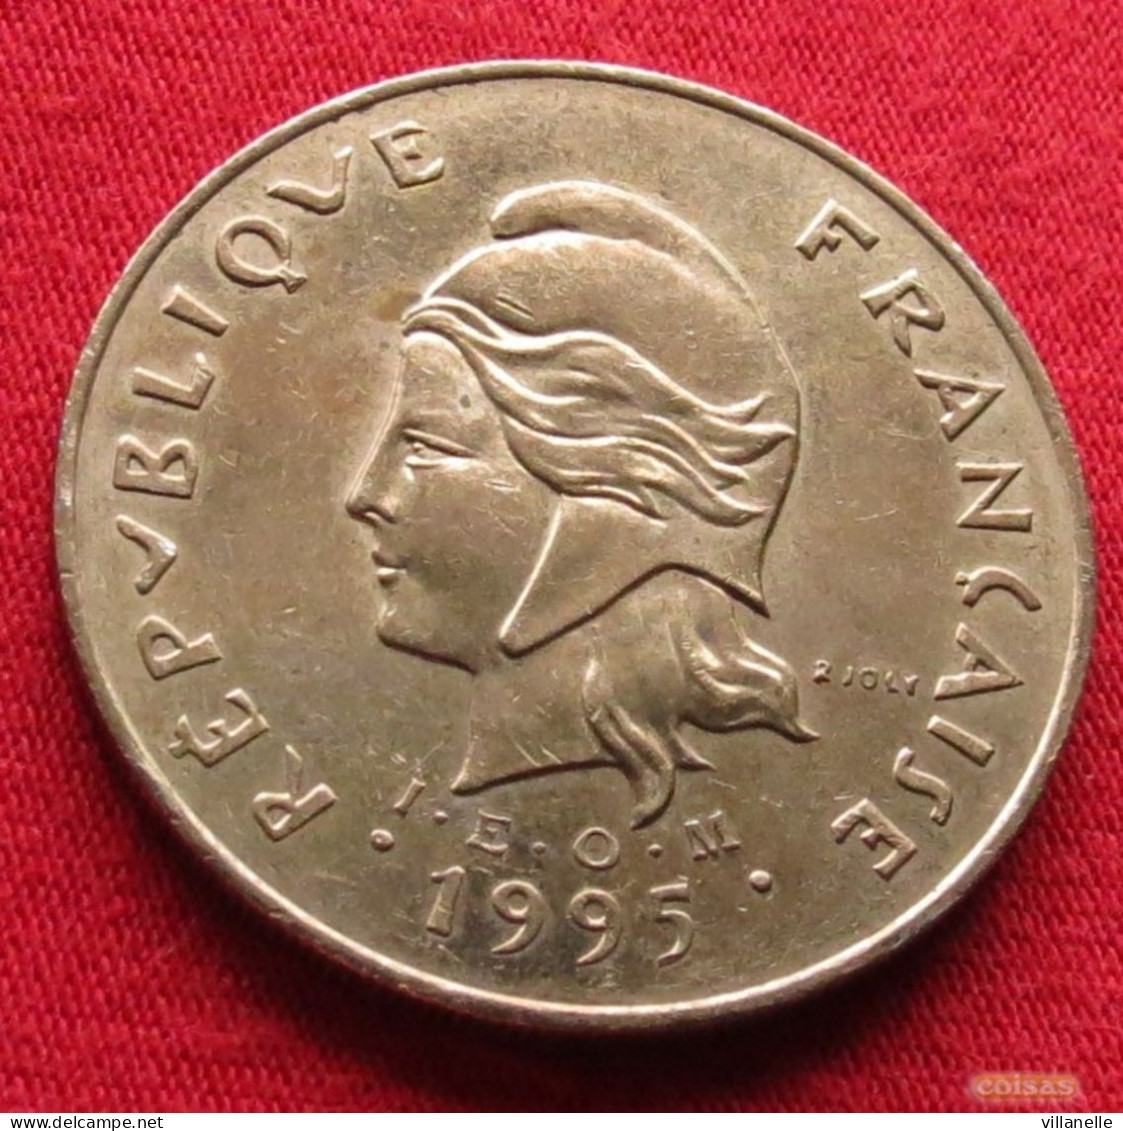 French Polynesia 100 Francs 1995 KM# 14 *V2T Polynesie Polinesia - Polynésie Française